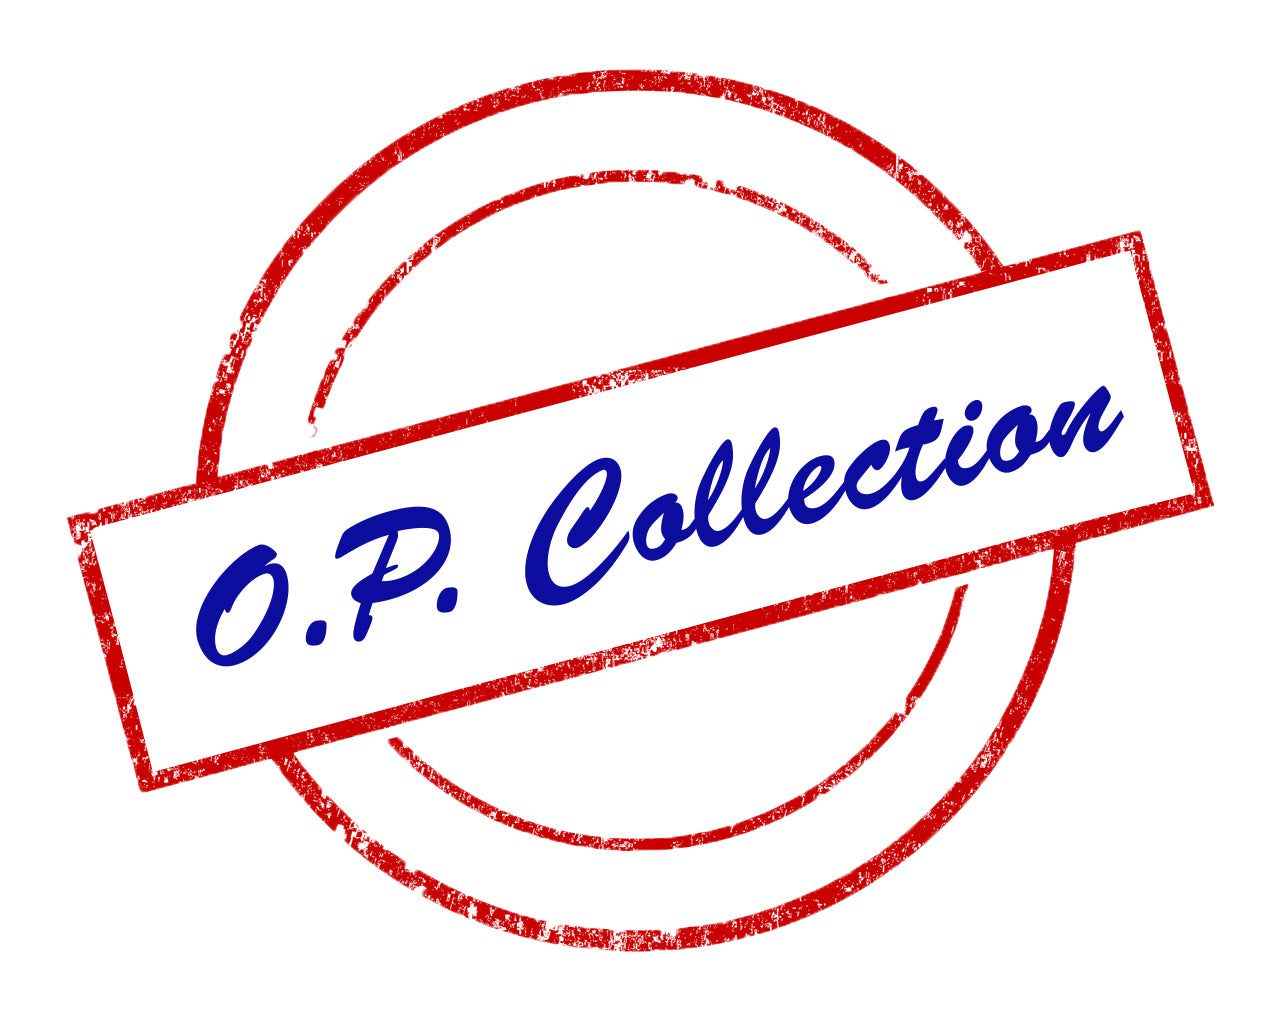 O. P. Collection